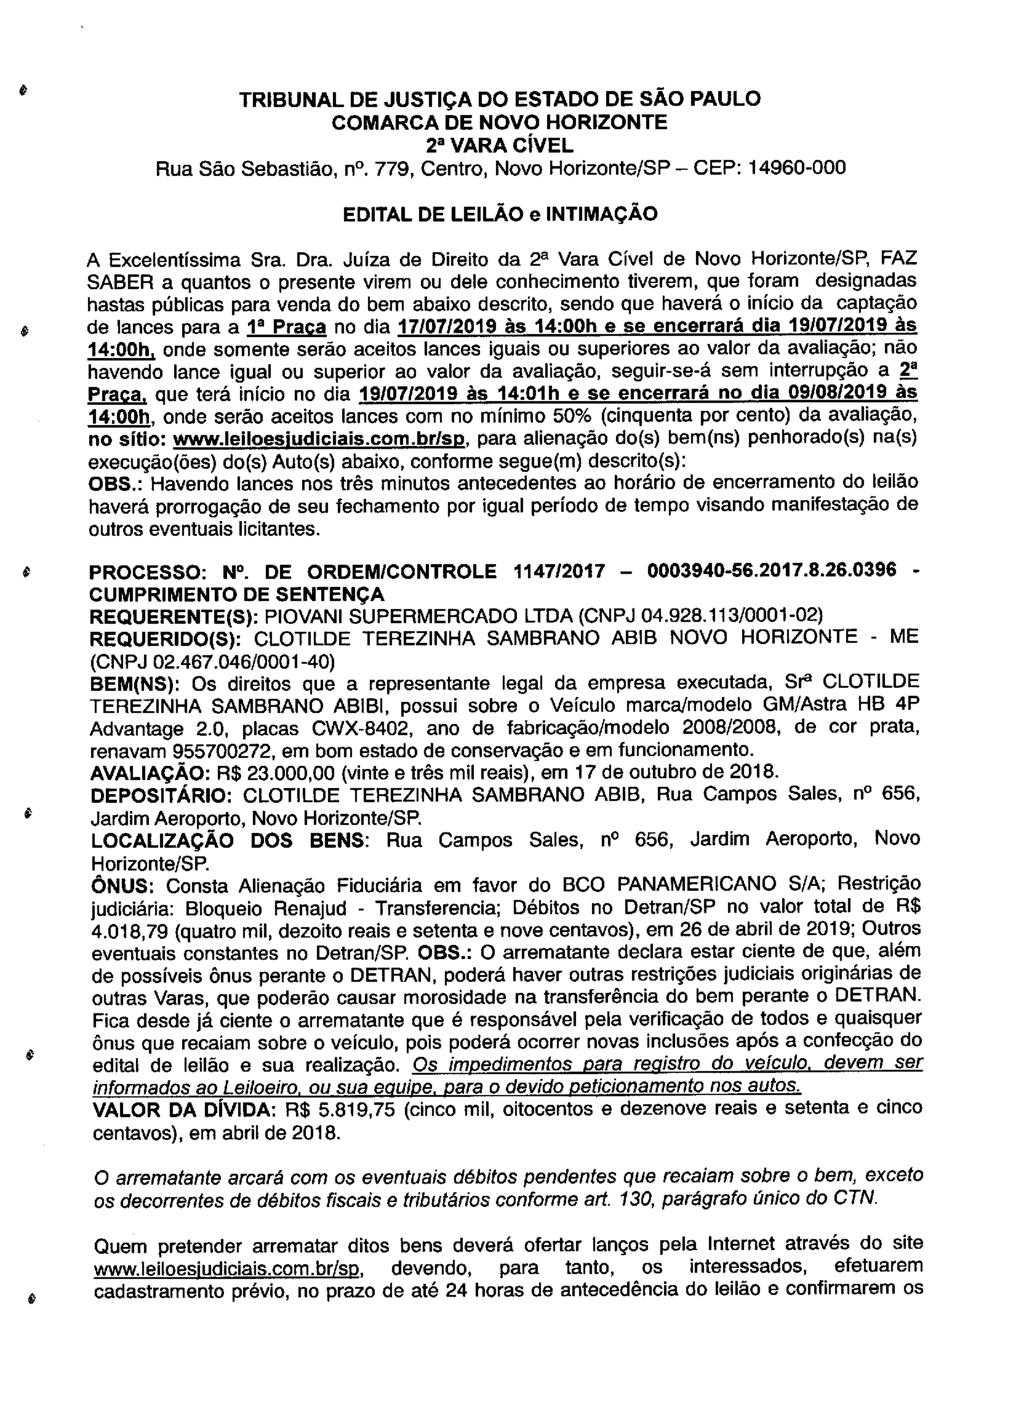 fls. 100 Este documento é cópia do original, assinado digitalmente por LUZIA REGIS DE OLIVEIRA DUARTE, liberado nos autos em 08/05/2019 às 15:14.